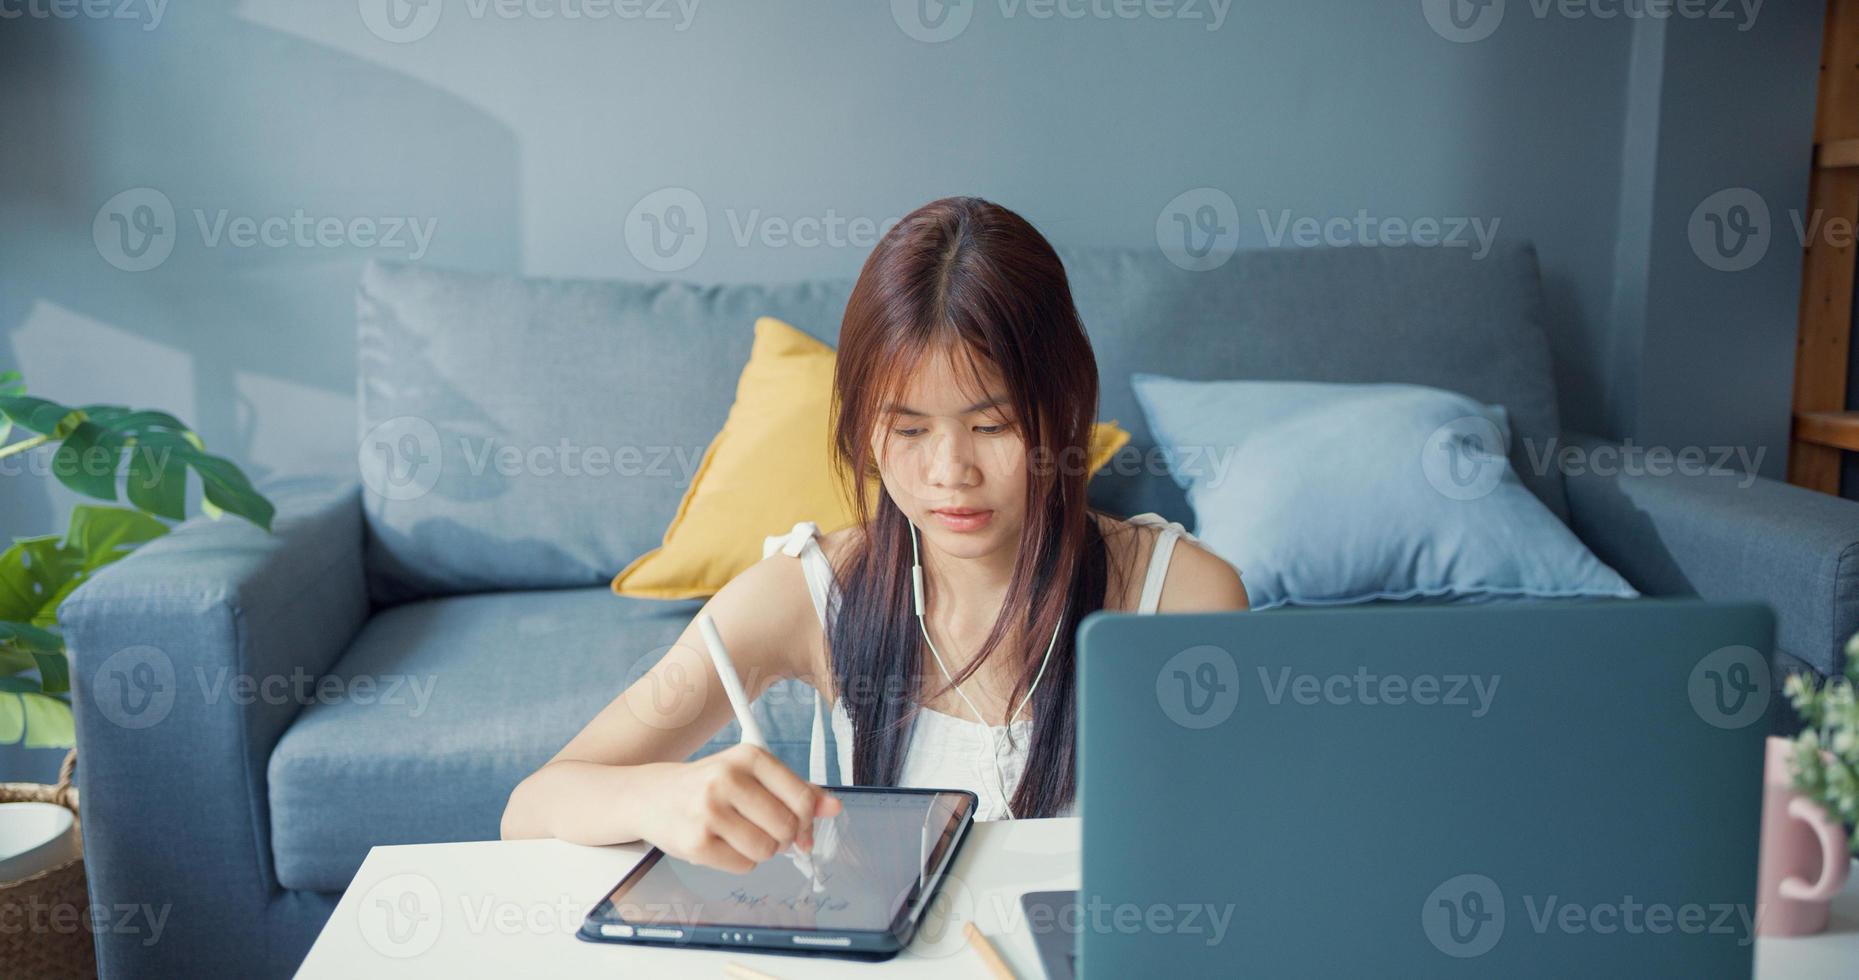 jeune fille asiatique adolescente avec chemise décontractée porter des écouteurs utiliser un ordinateur portable apprendre en ligne écrire une conférence dans un ordinateur portable dans le salon de la maison. isoler le concept de pandémie de coronavirus d'apprentissage en ligne de l'éducation en ligne. photo